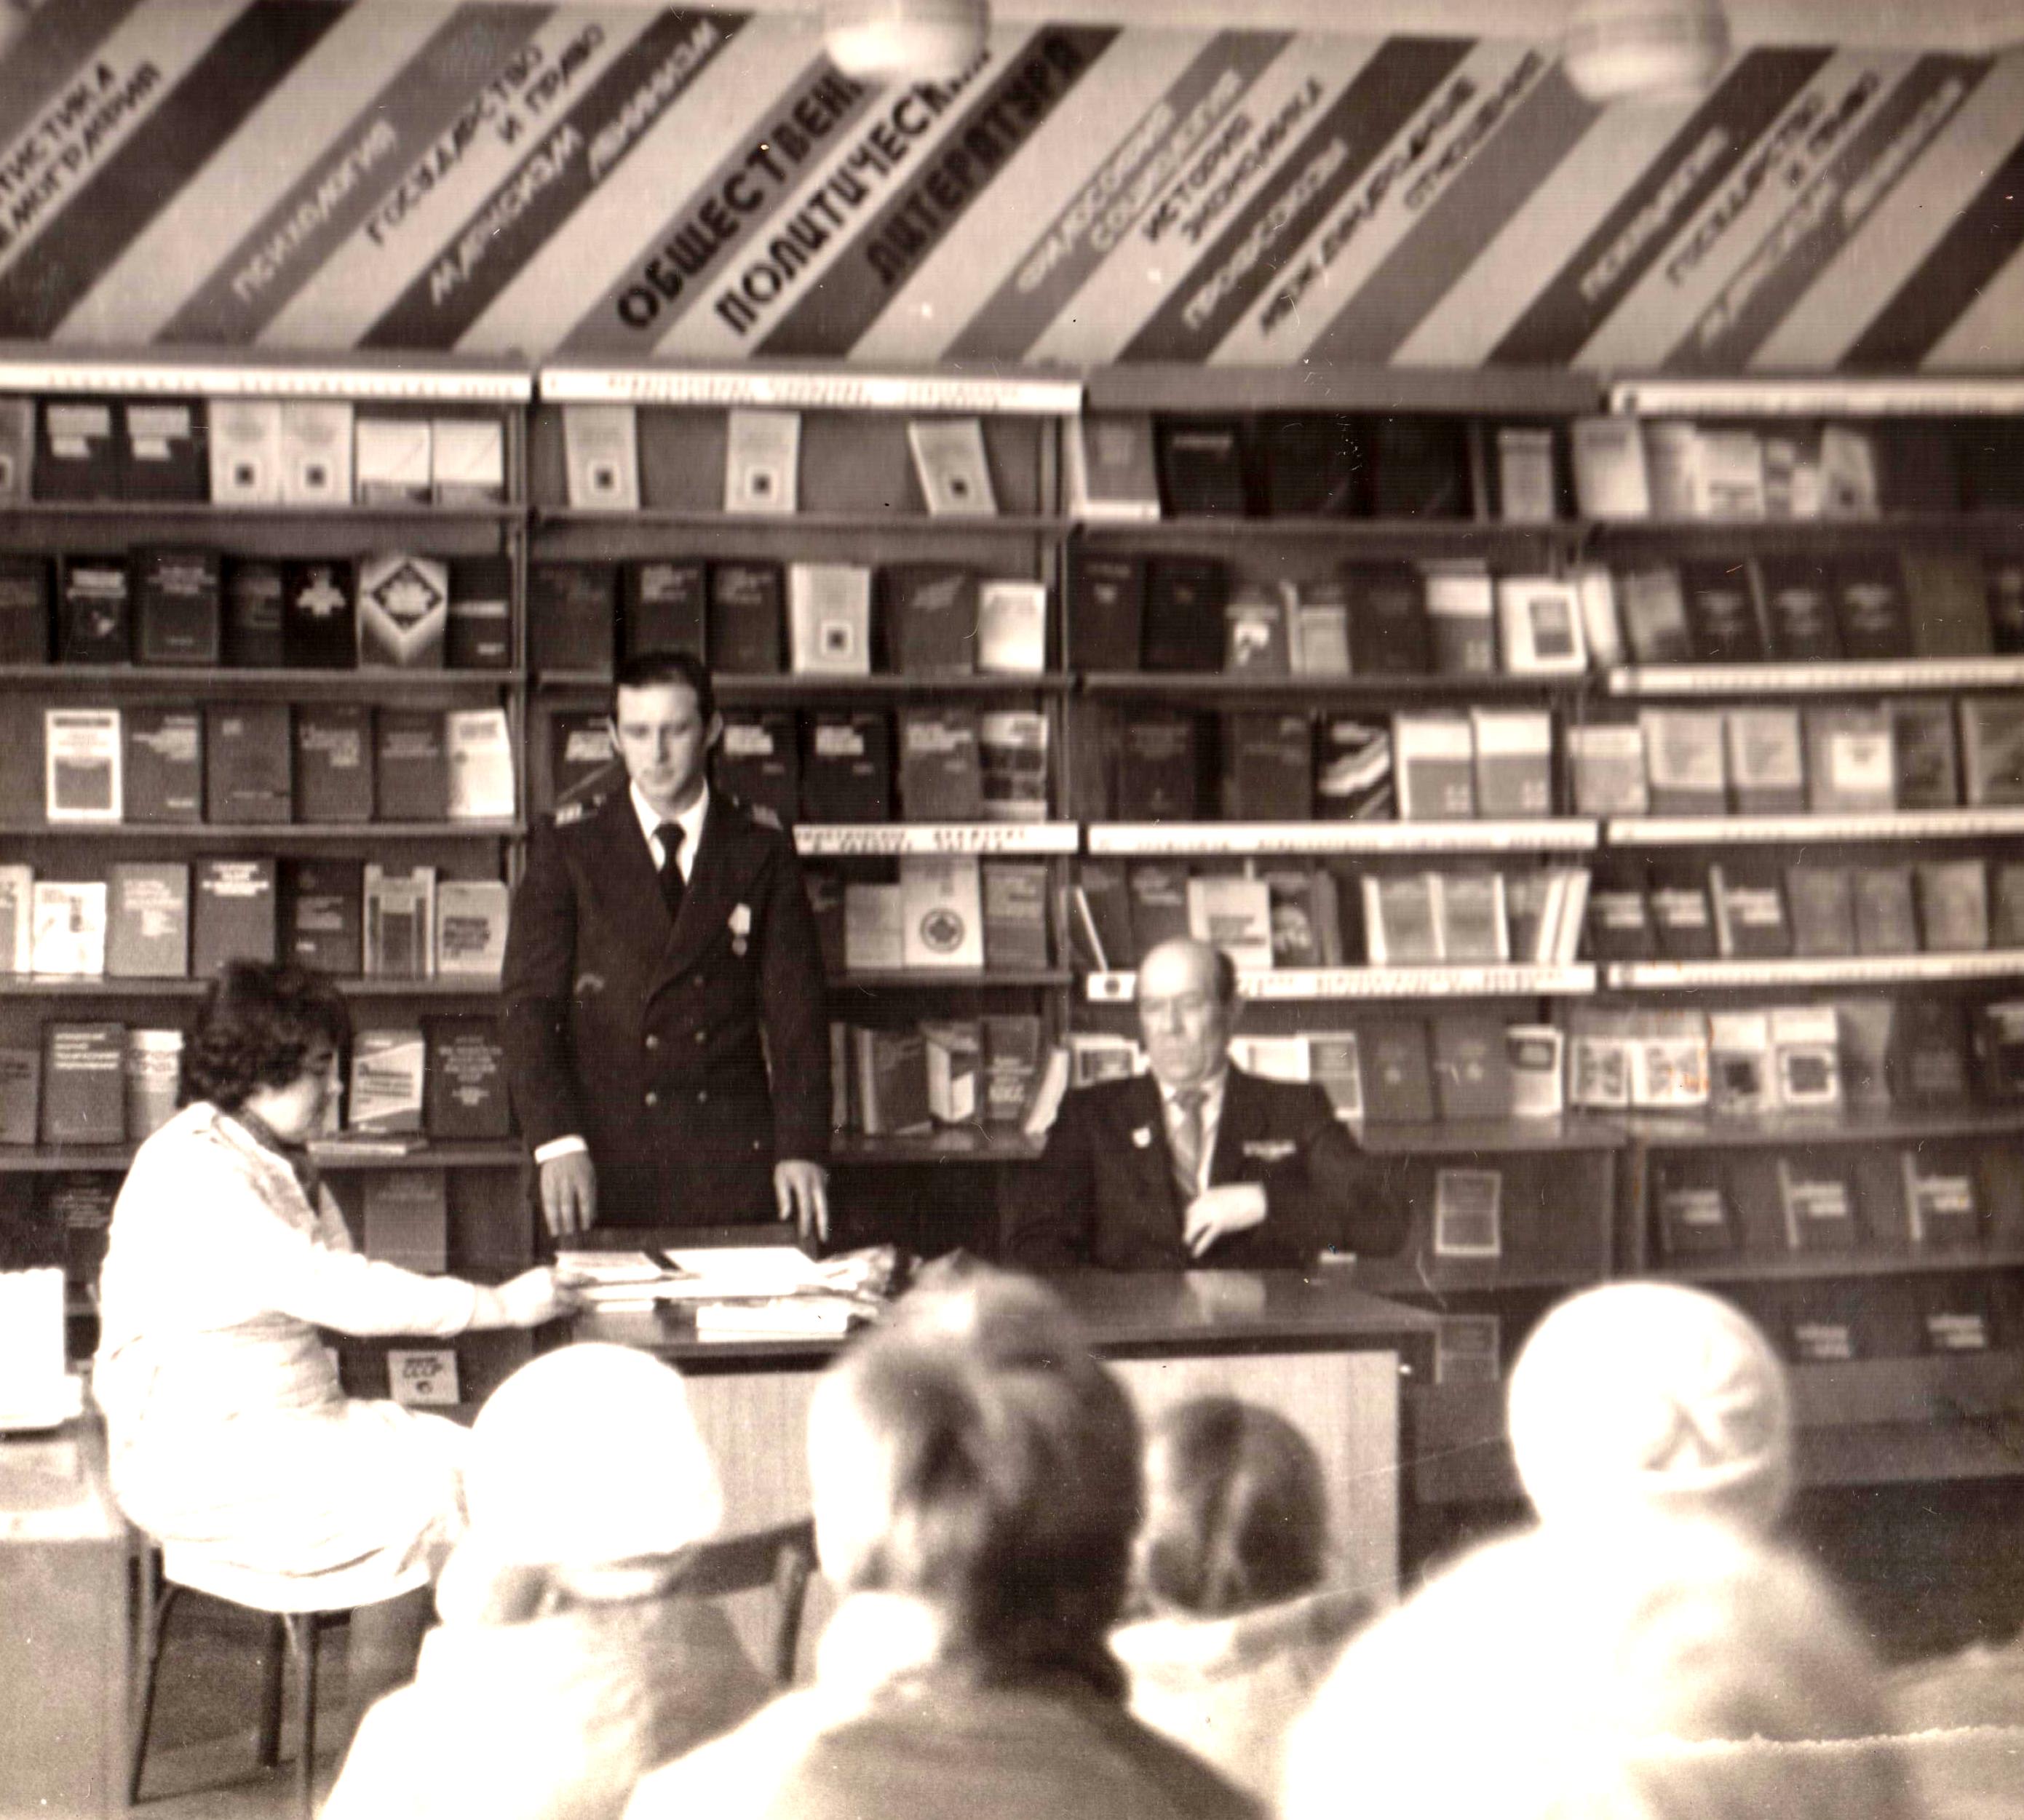 Кузнецов Петр Васильевич  (первый справа), участник Великой Отечественной войны, на встрече с читателями в помещении городской библиотеки